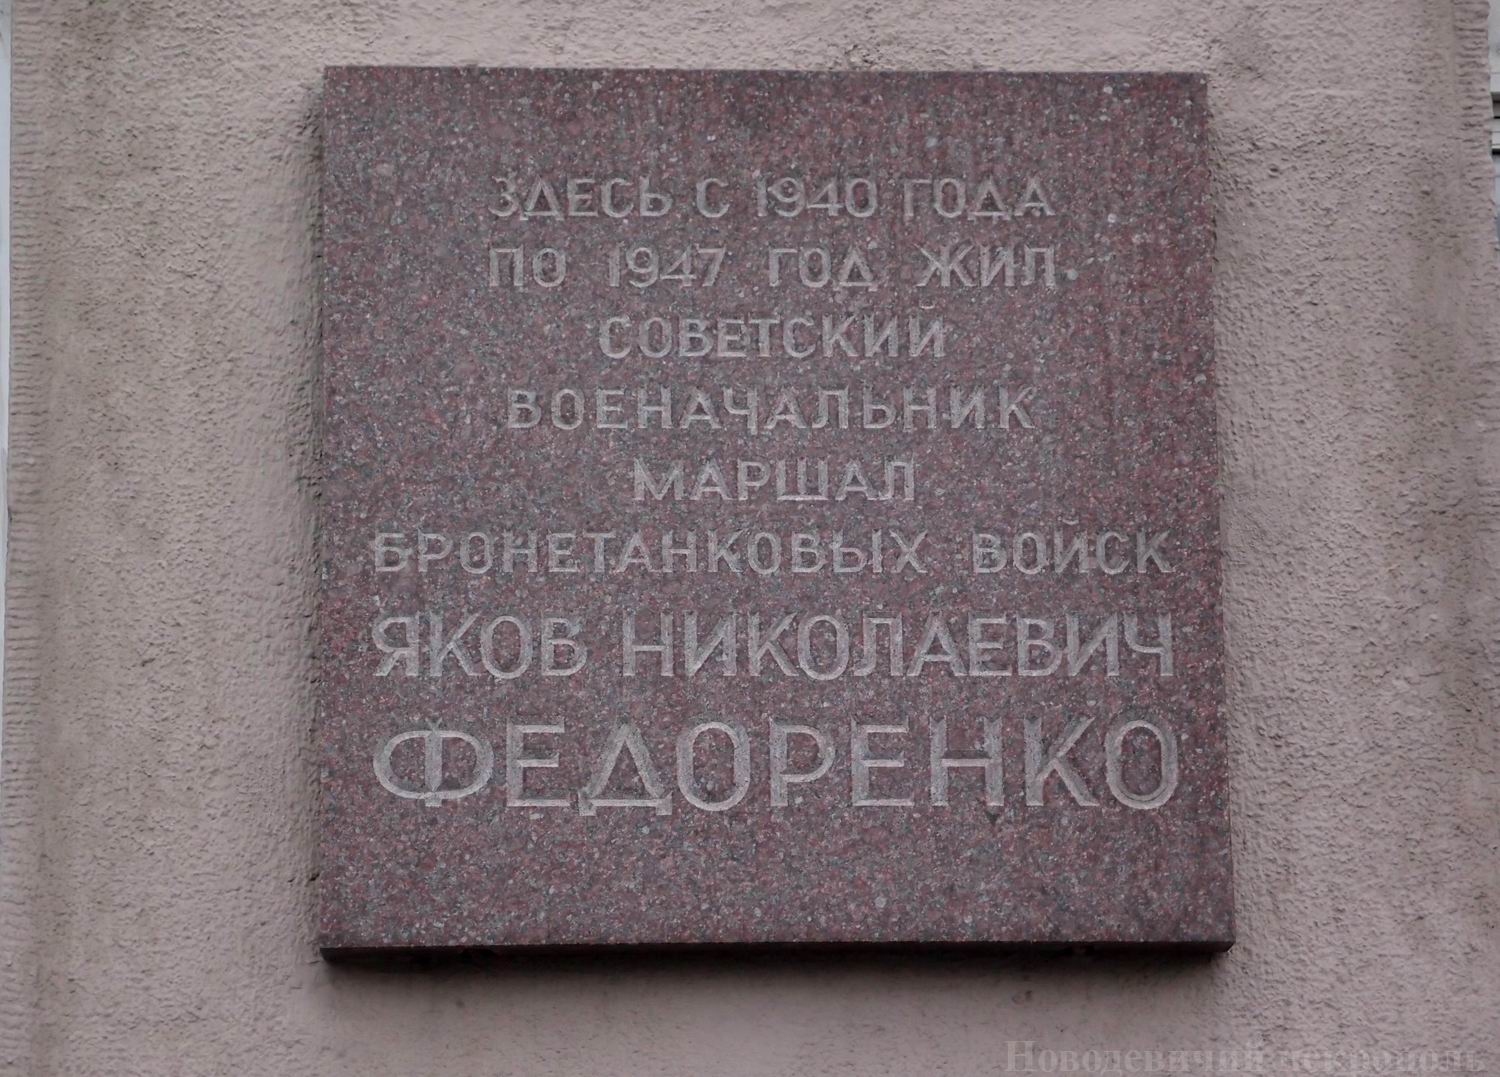 Мемориальная доска Федоренко Я.Н. (1896–1947), арх. Ю.В.Калмыков, на улице Серафимовича, дом 2, открыта 6.5.1986.